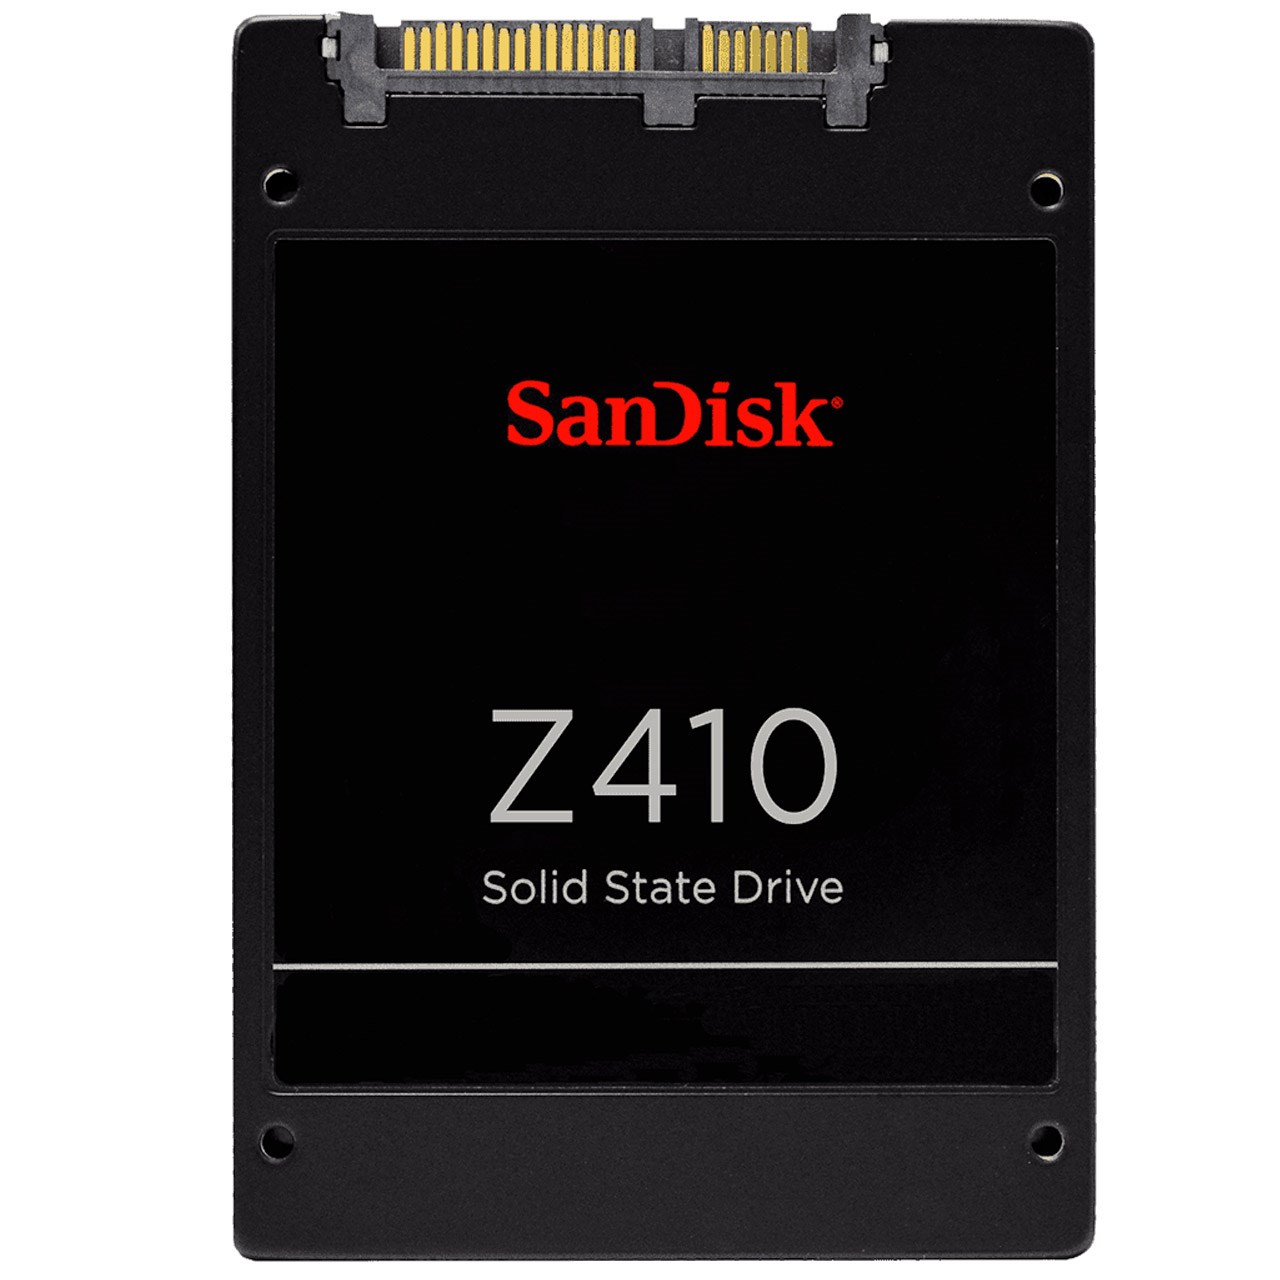 حافظه SSD سن دیسک مدل Z410 ظرفیت 240 گیگابایت